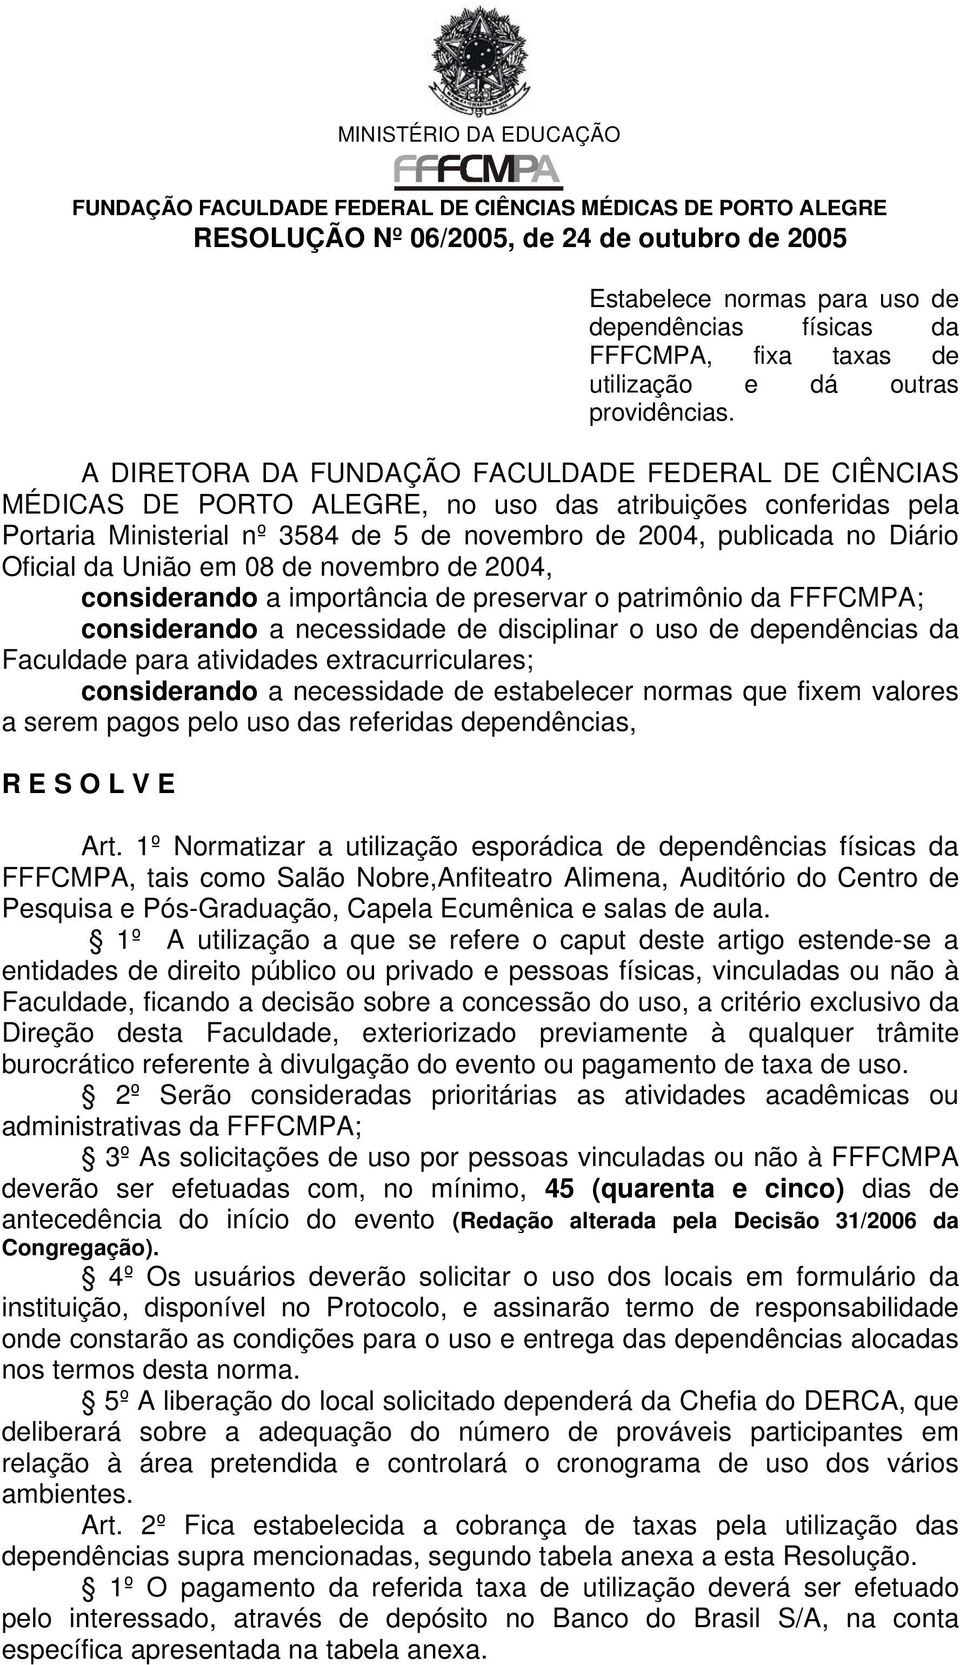 A DIRETORA DA FUNDAÇÃO FACULDADE FEDERAL DE CIÊNCIAS MÉDICAS DE PORTO ALEGRE, no uso das atribuições conferidas pela Portaria Ministerial nº 3584 de 5 de novembro de 2004, publicada no Diário Oficial